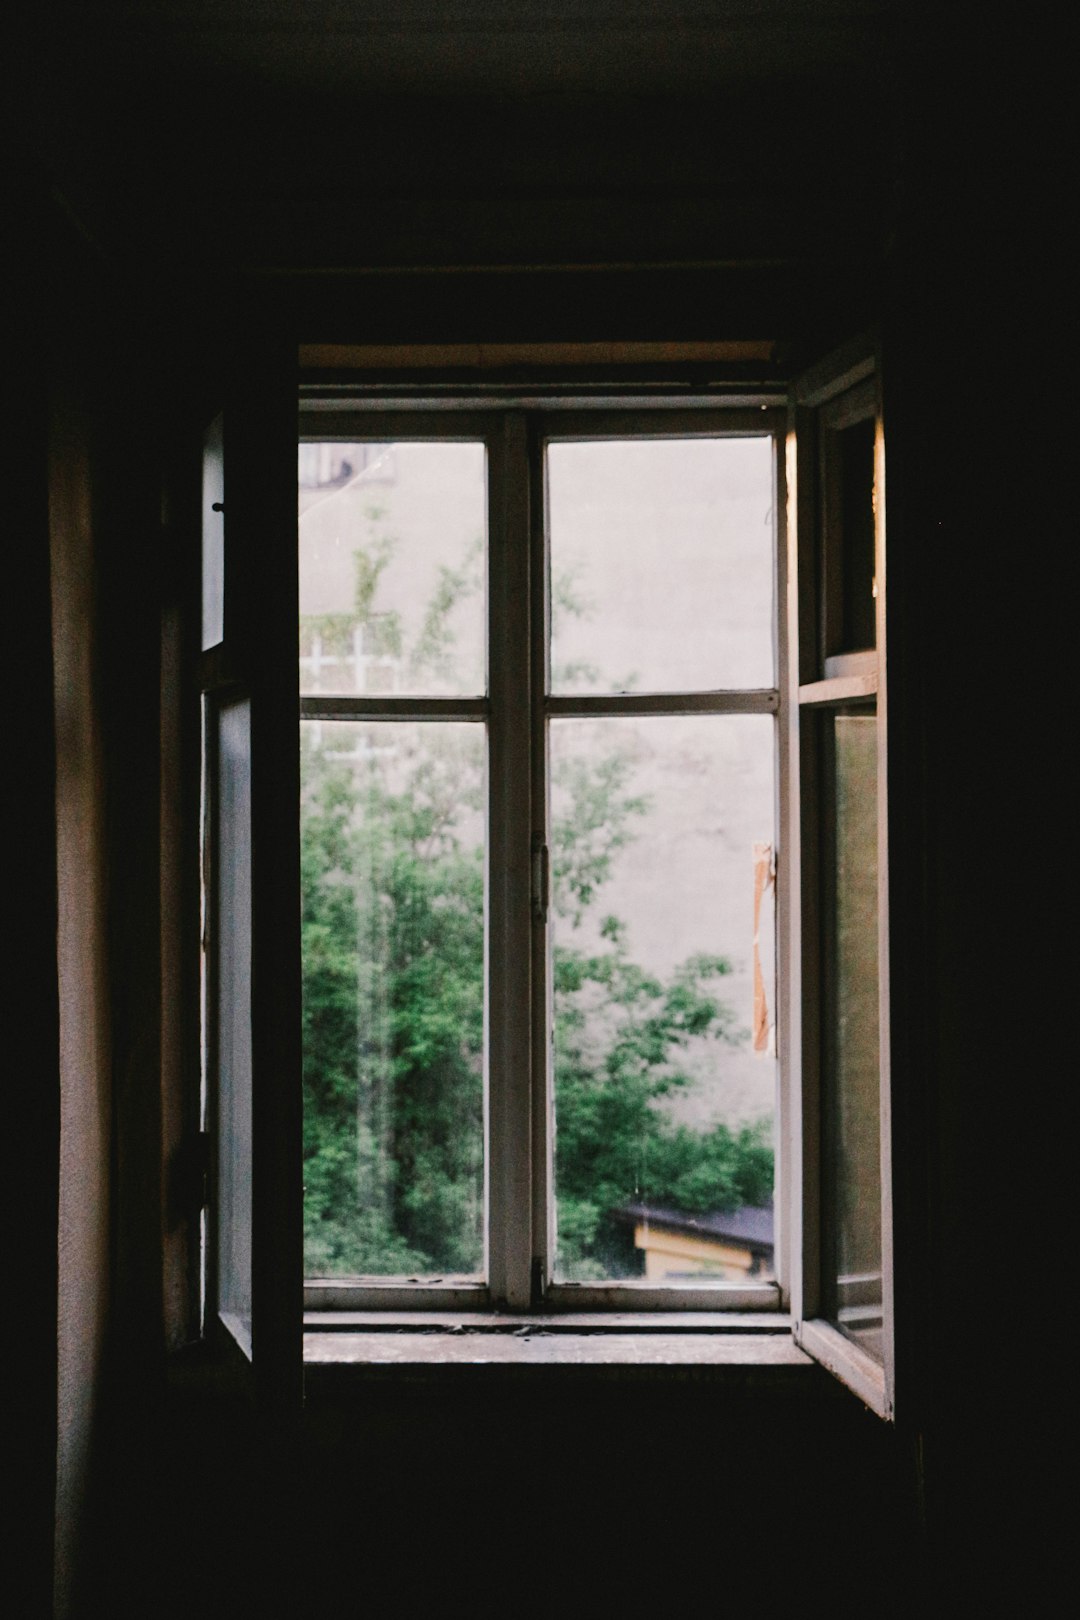  open casement window near plants window